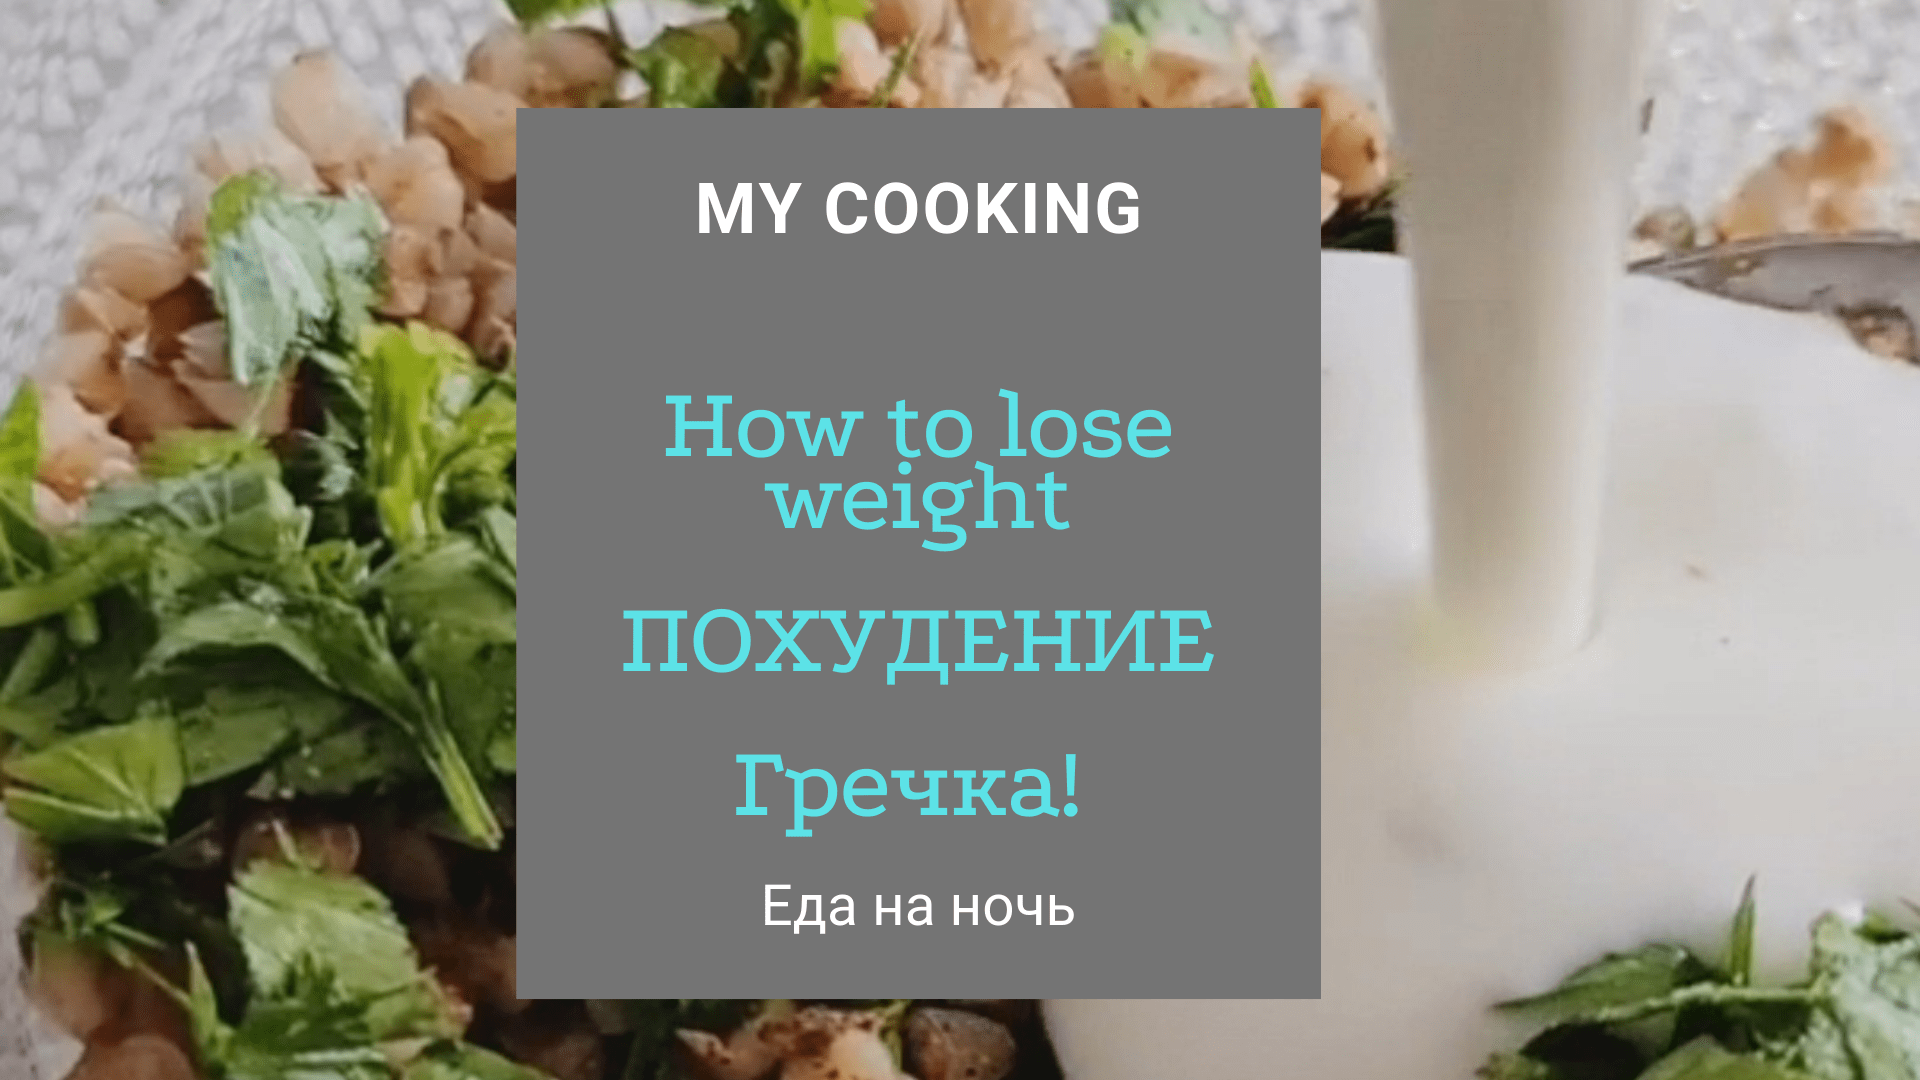 How to lose weight/Что съесть, чтобы похудеть/Гречка/Пошаговый рецепт